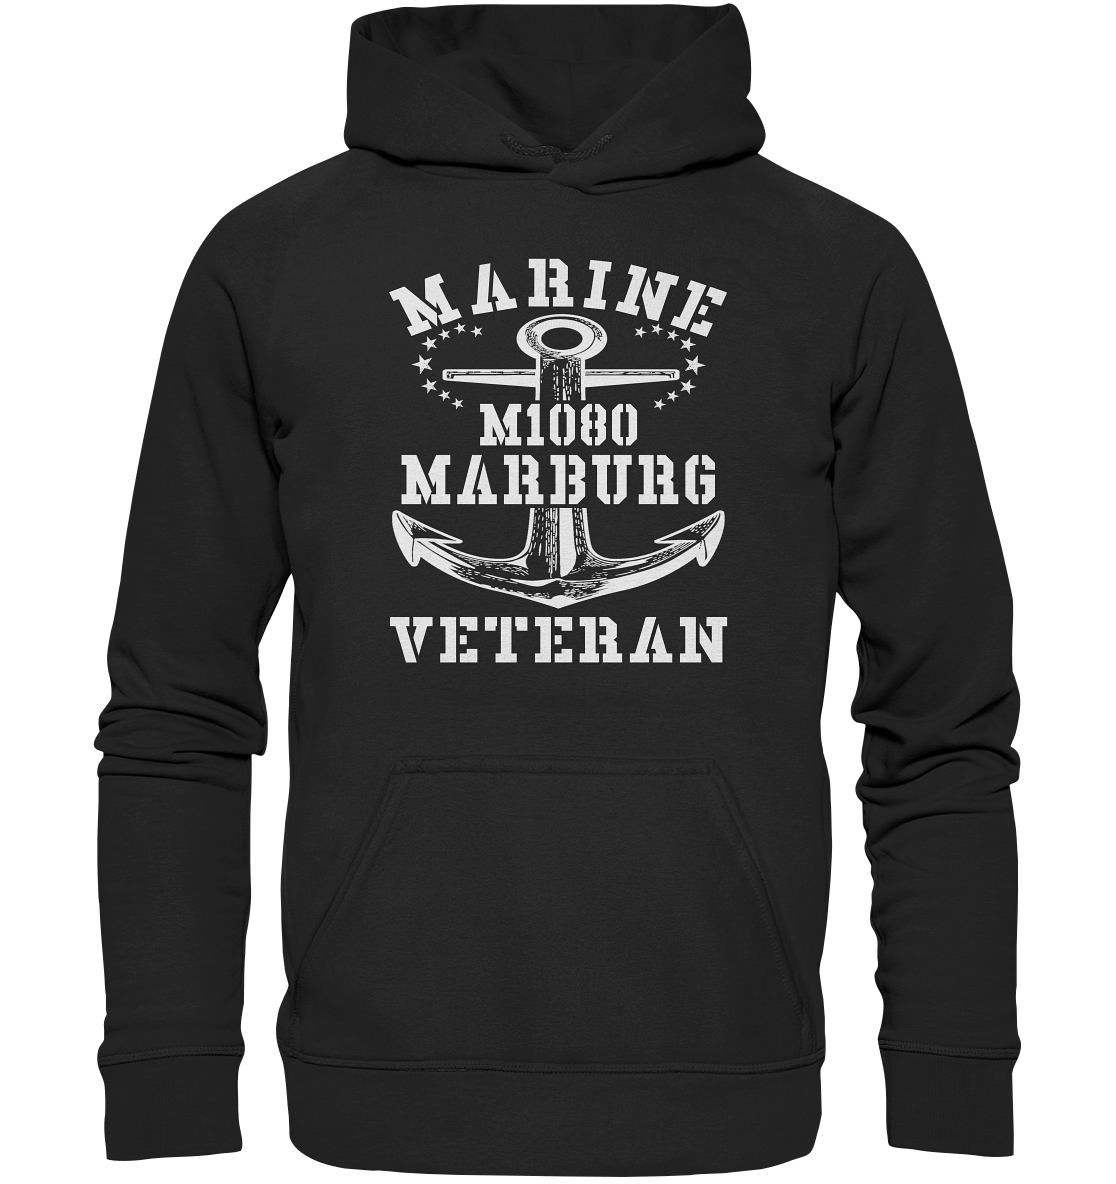 MARINE VETERAN M1080 MARBURG - Basic Unisex Hoodie